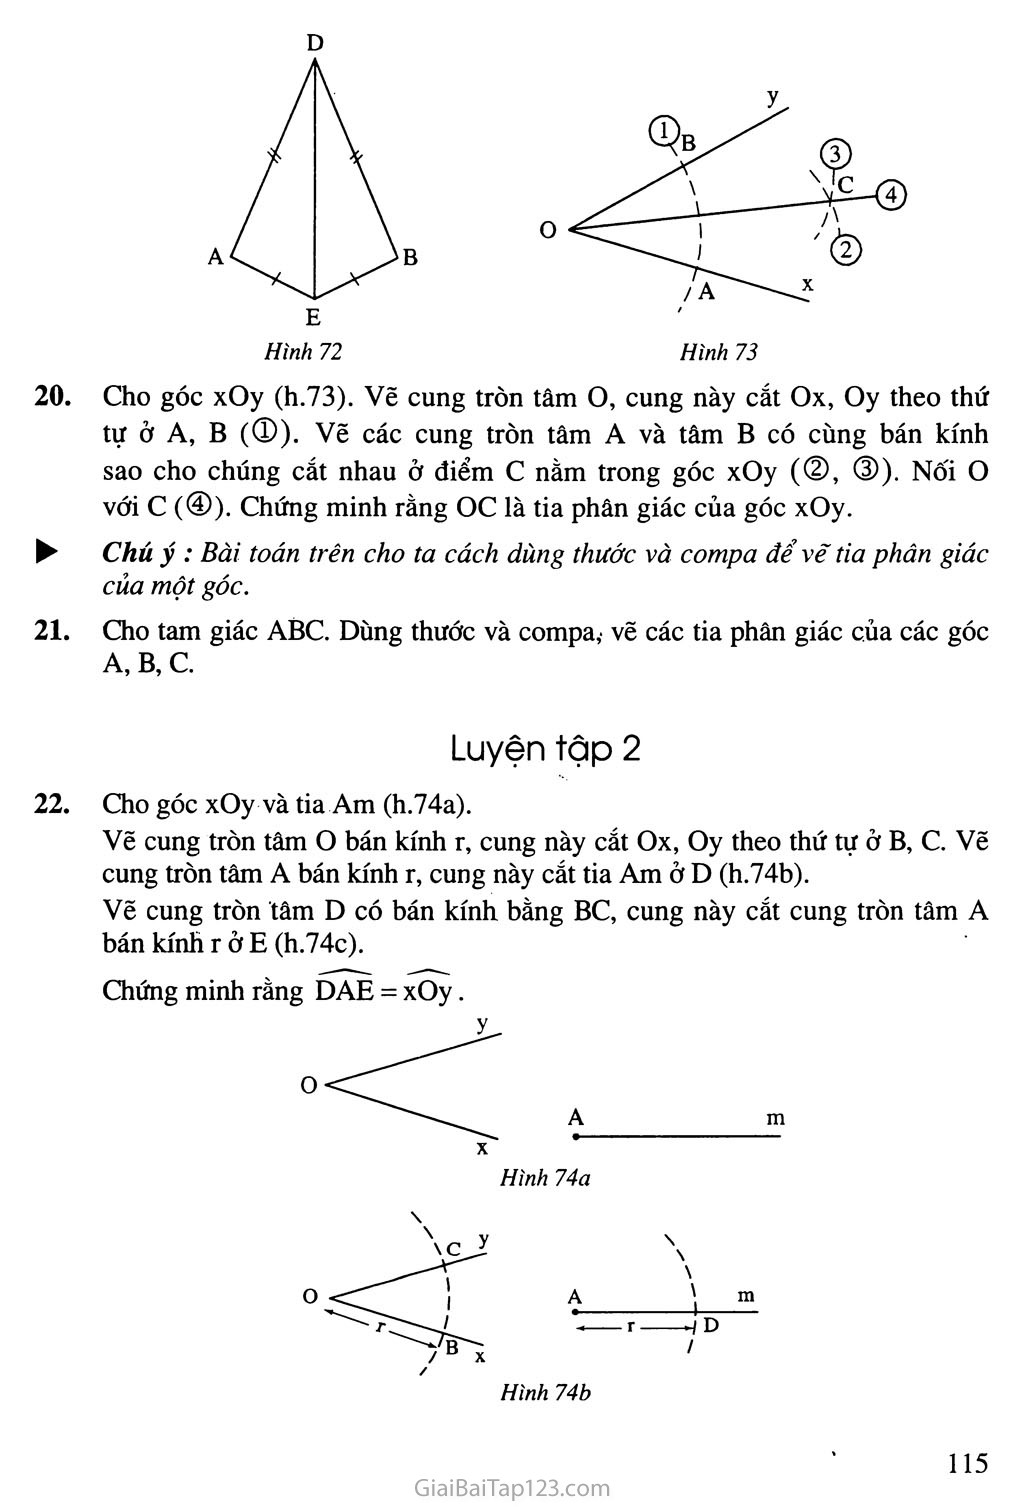 Bài 3. Trường hợp bằng nhau thứ nhất của tam giác: cạnh - cạnh - cạnh (c. c. c) trang 4